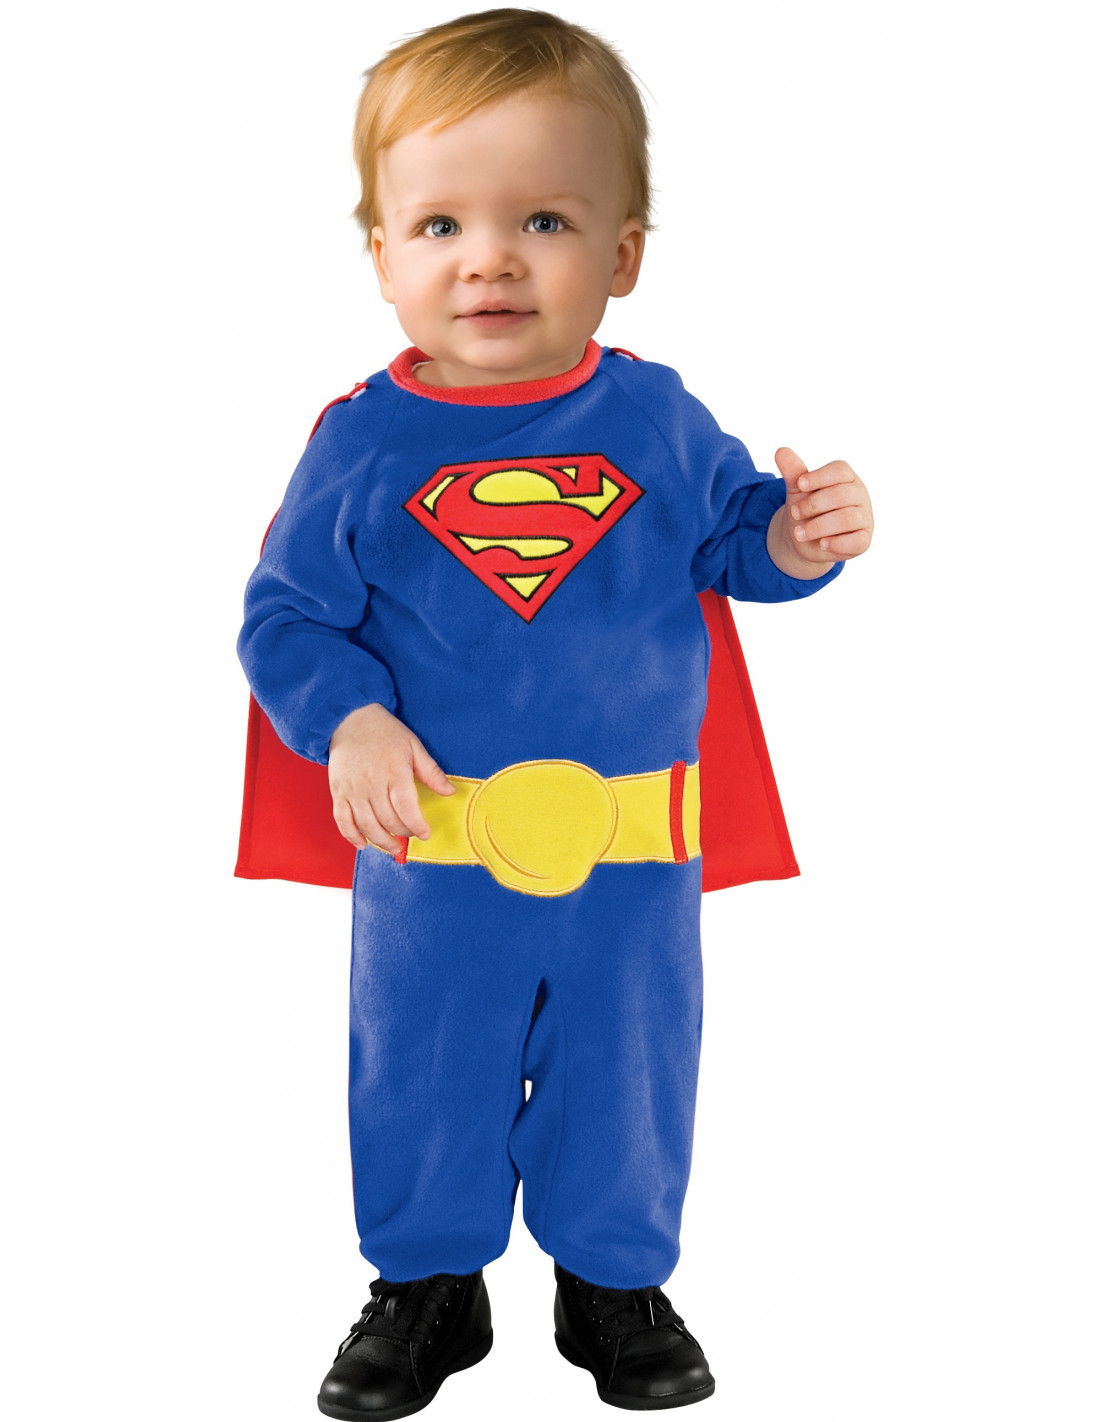 Capas De Superheroes Para Niños, Disfraz Para Niños